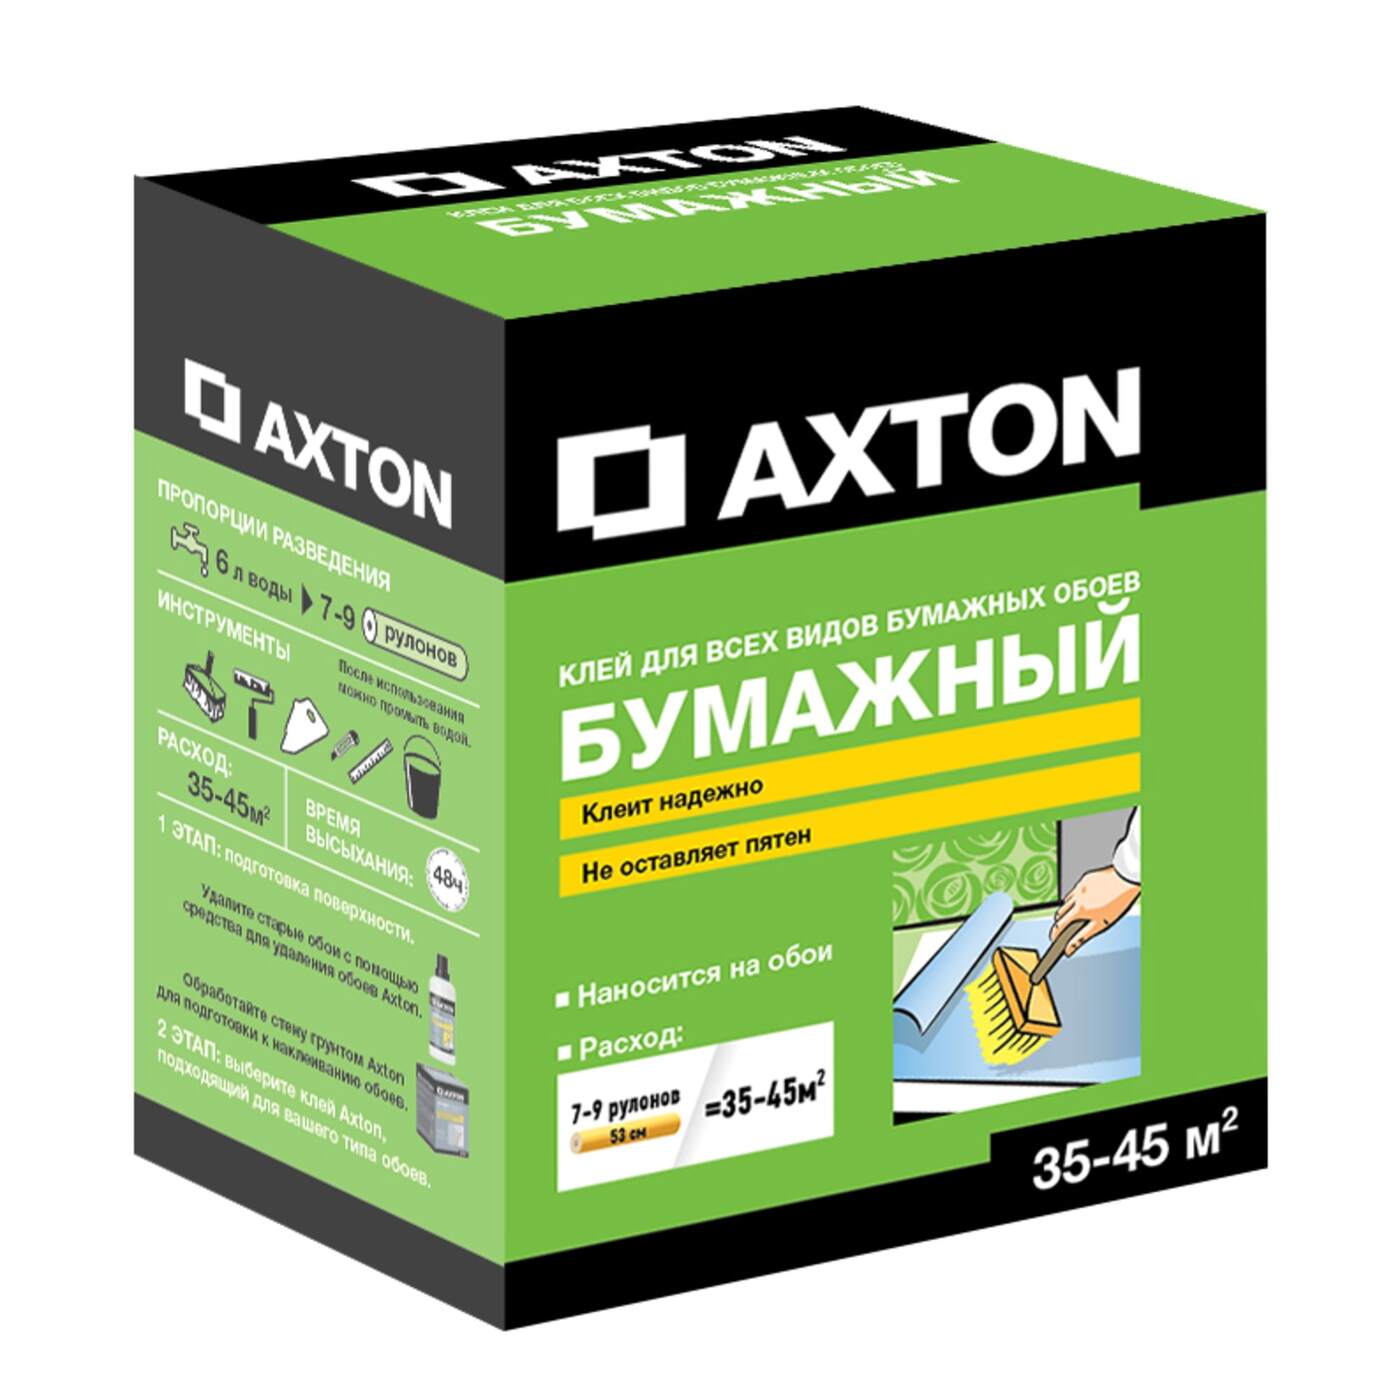 Какой клей бумажный лучший. Клей для бумажных обоев Axton 35-45 м². Axton клей обойный. Клей для бумажных обоев Axton. Леруа Мерлен клей Axton.